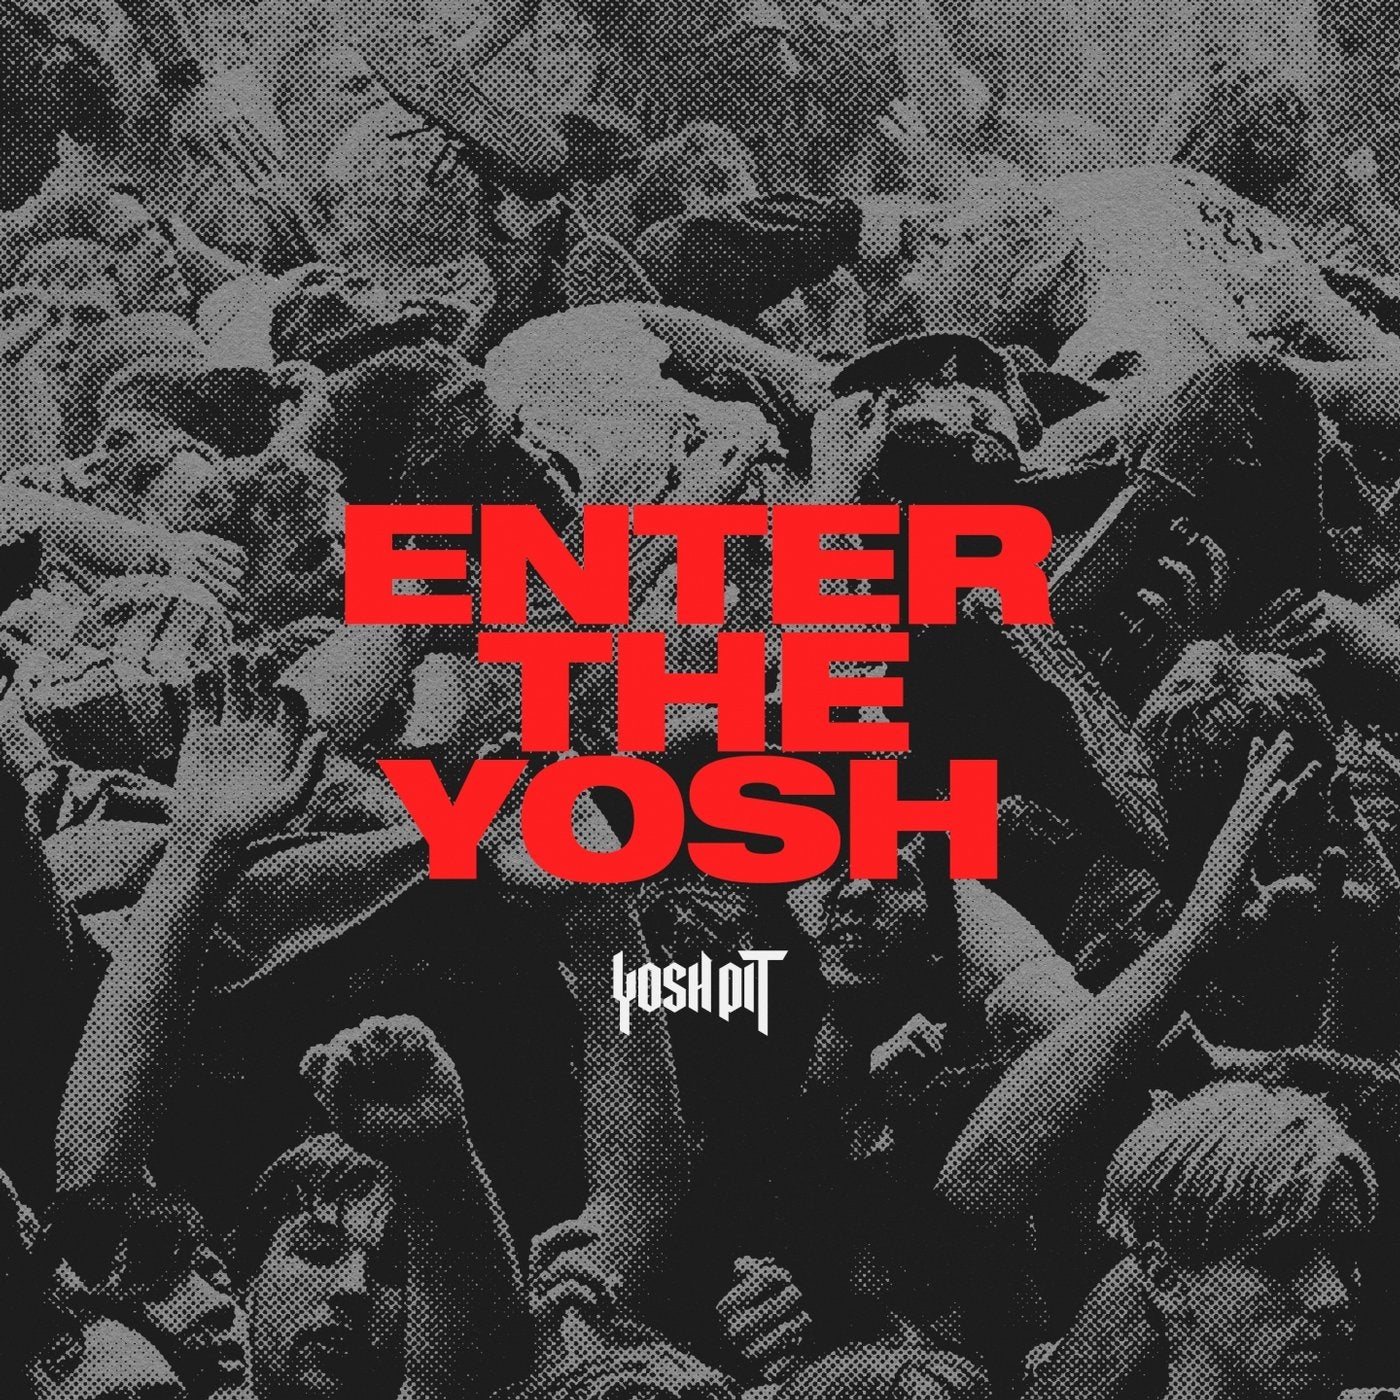 Enter the Yosh - EP